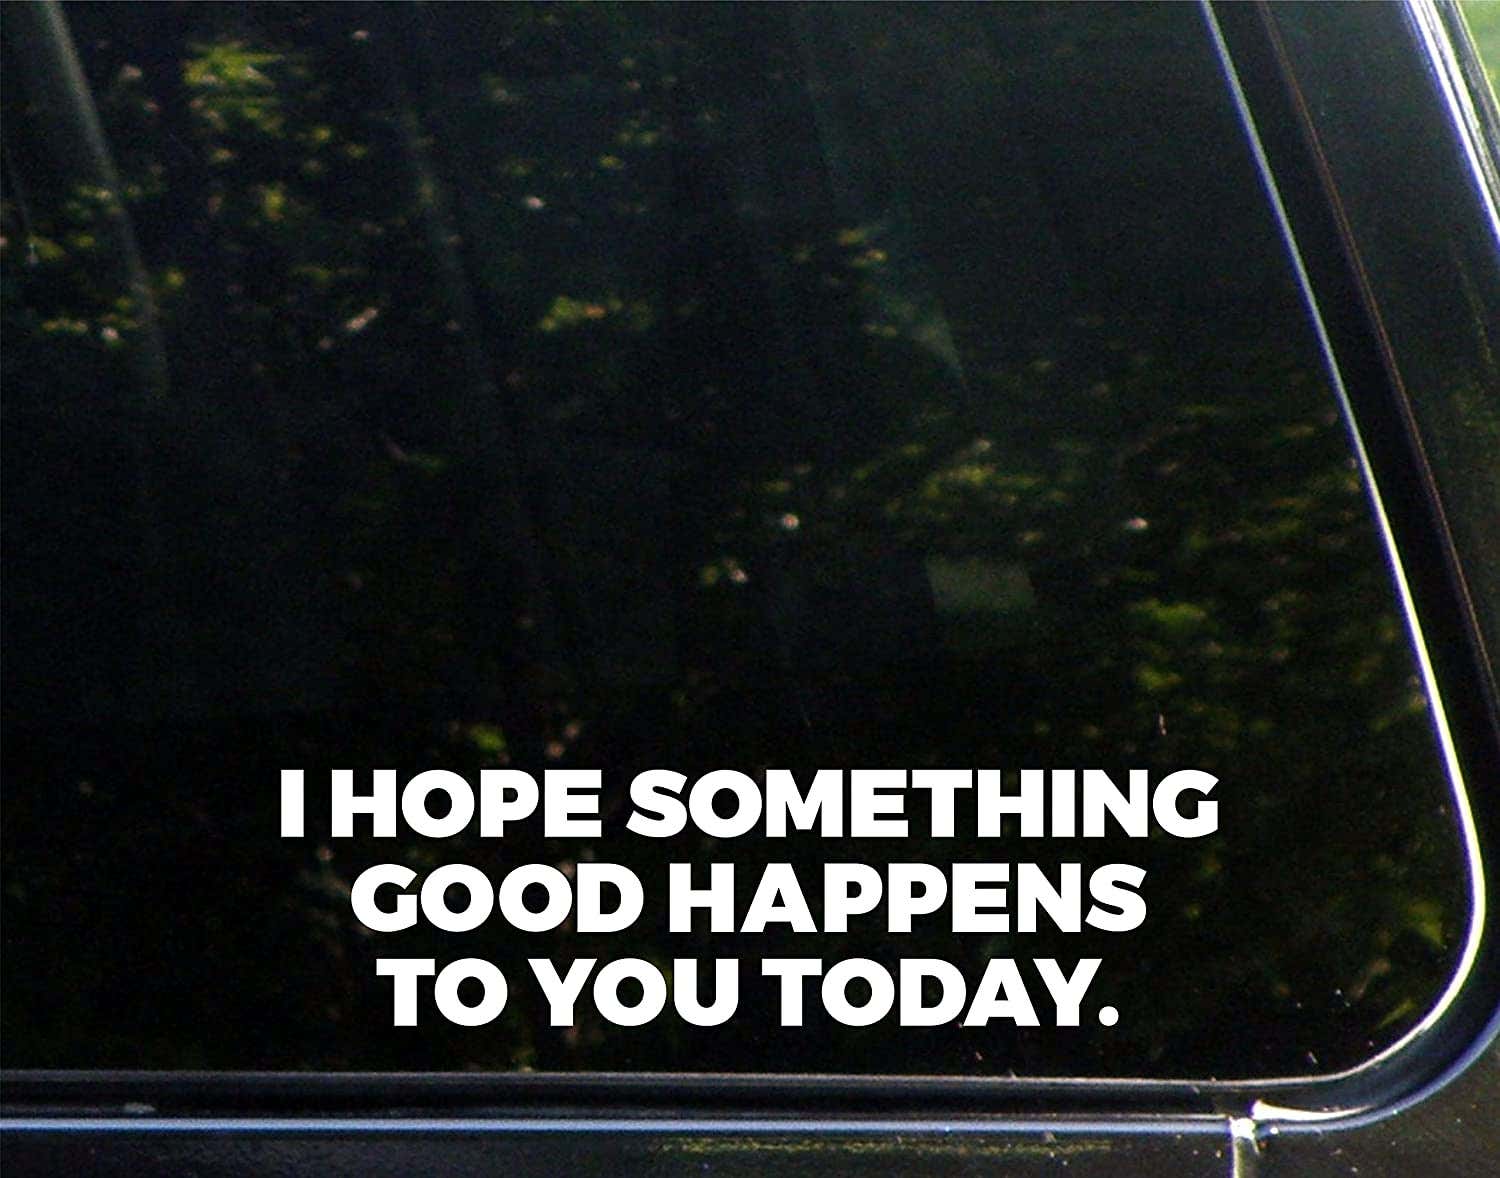 我希望你今天能有好事发生